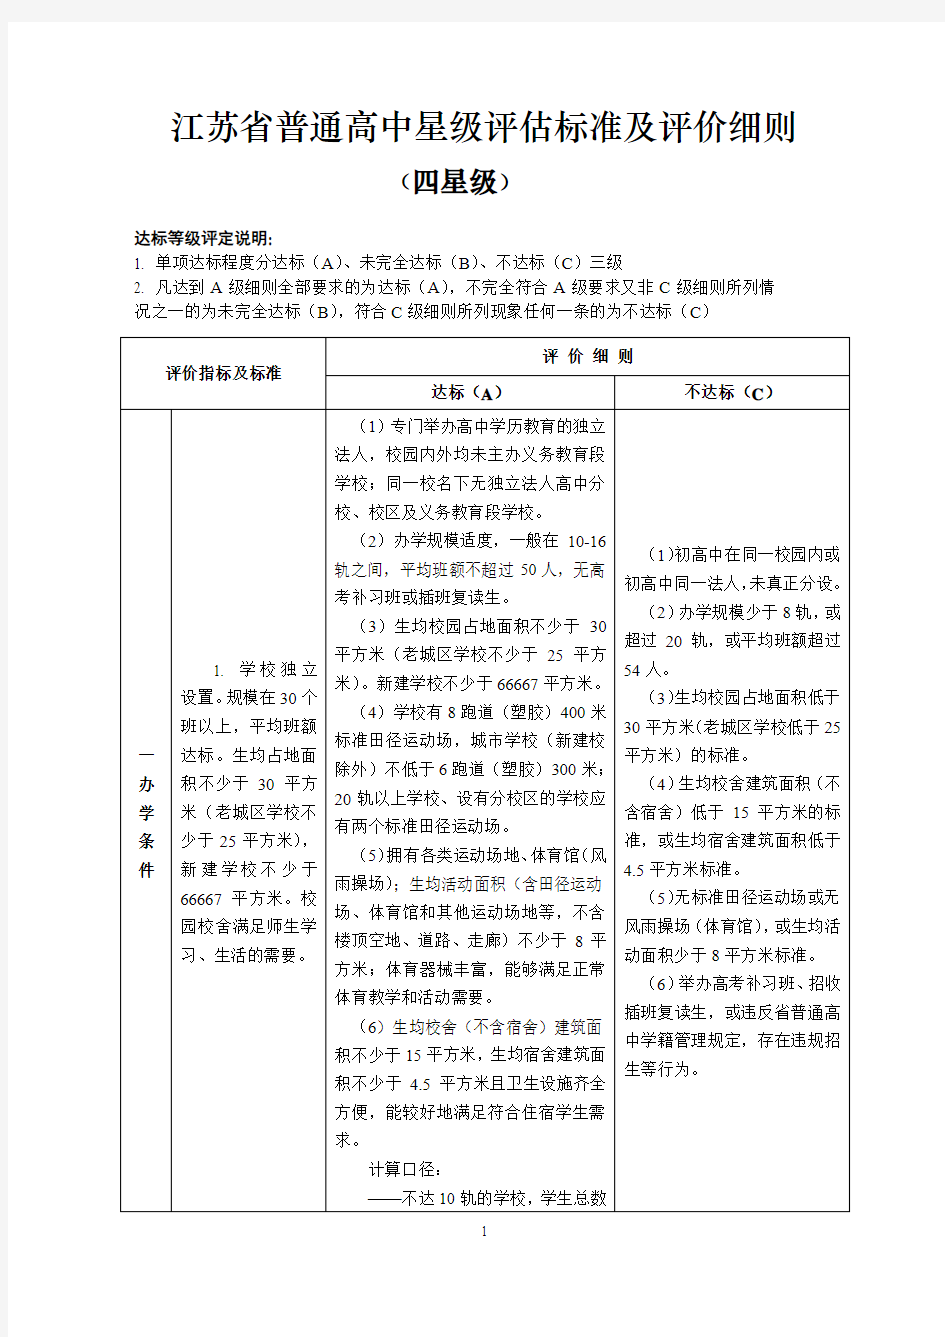 江苏省普通高中星级评估标准及评价细则